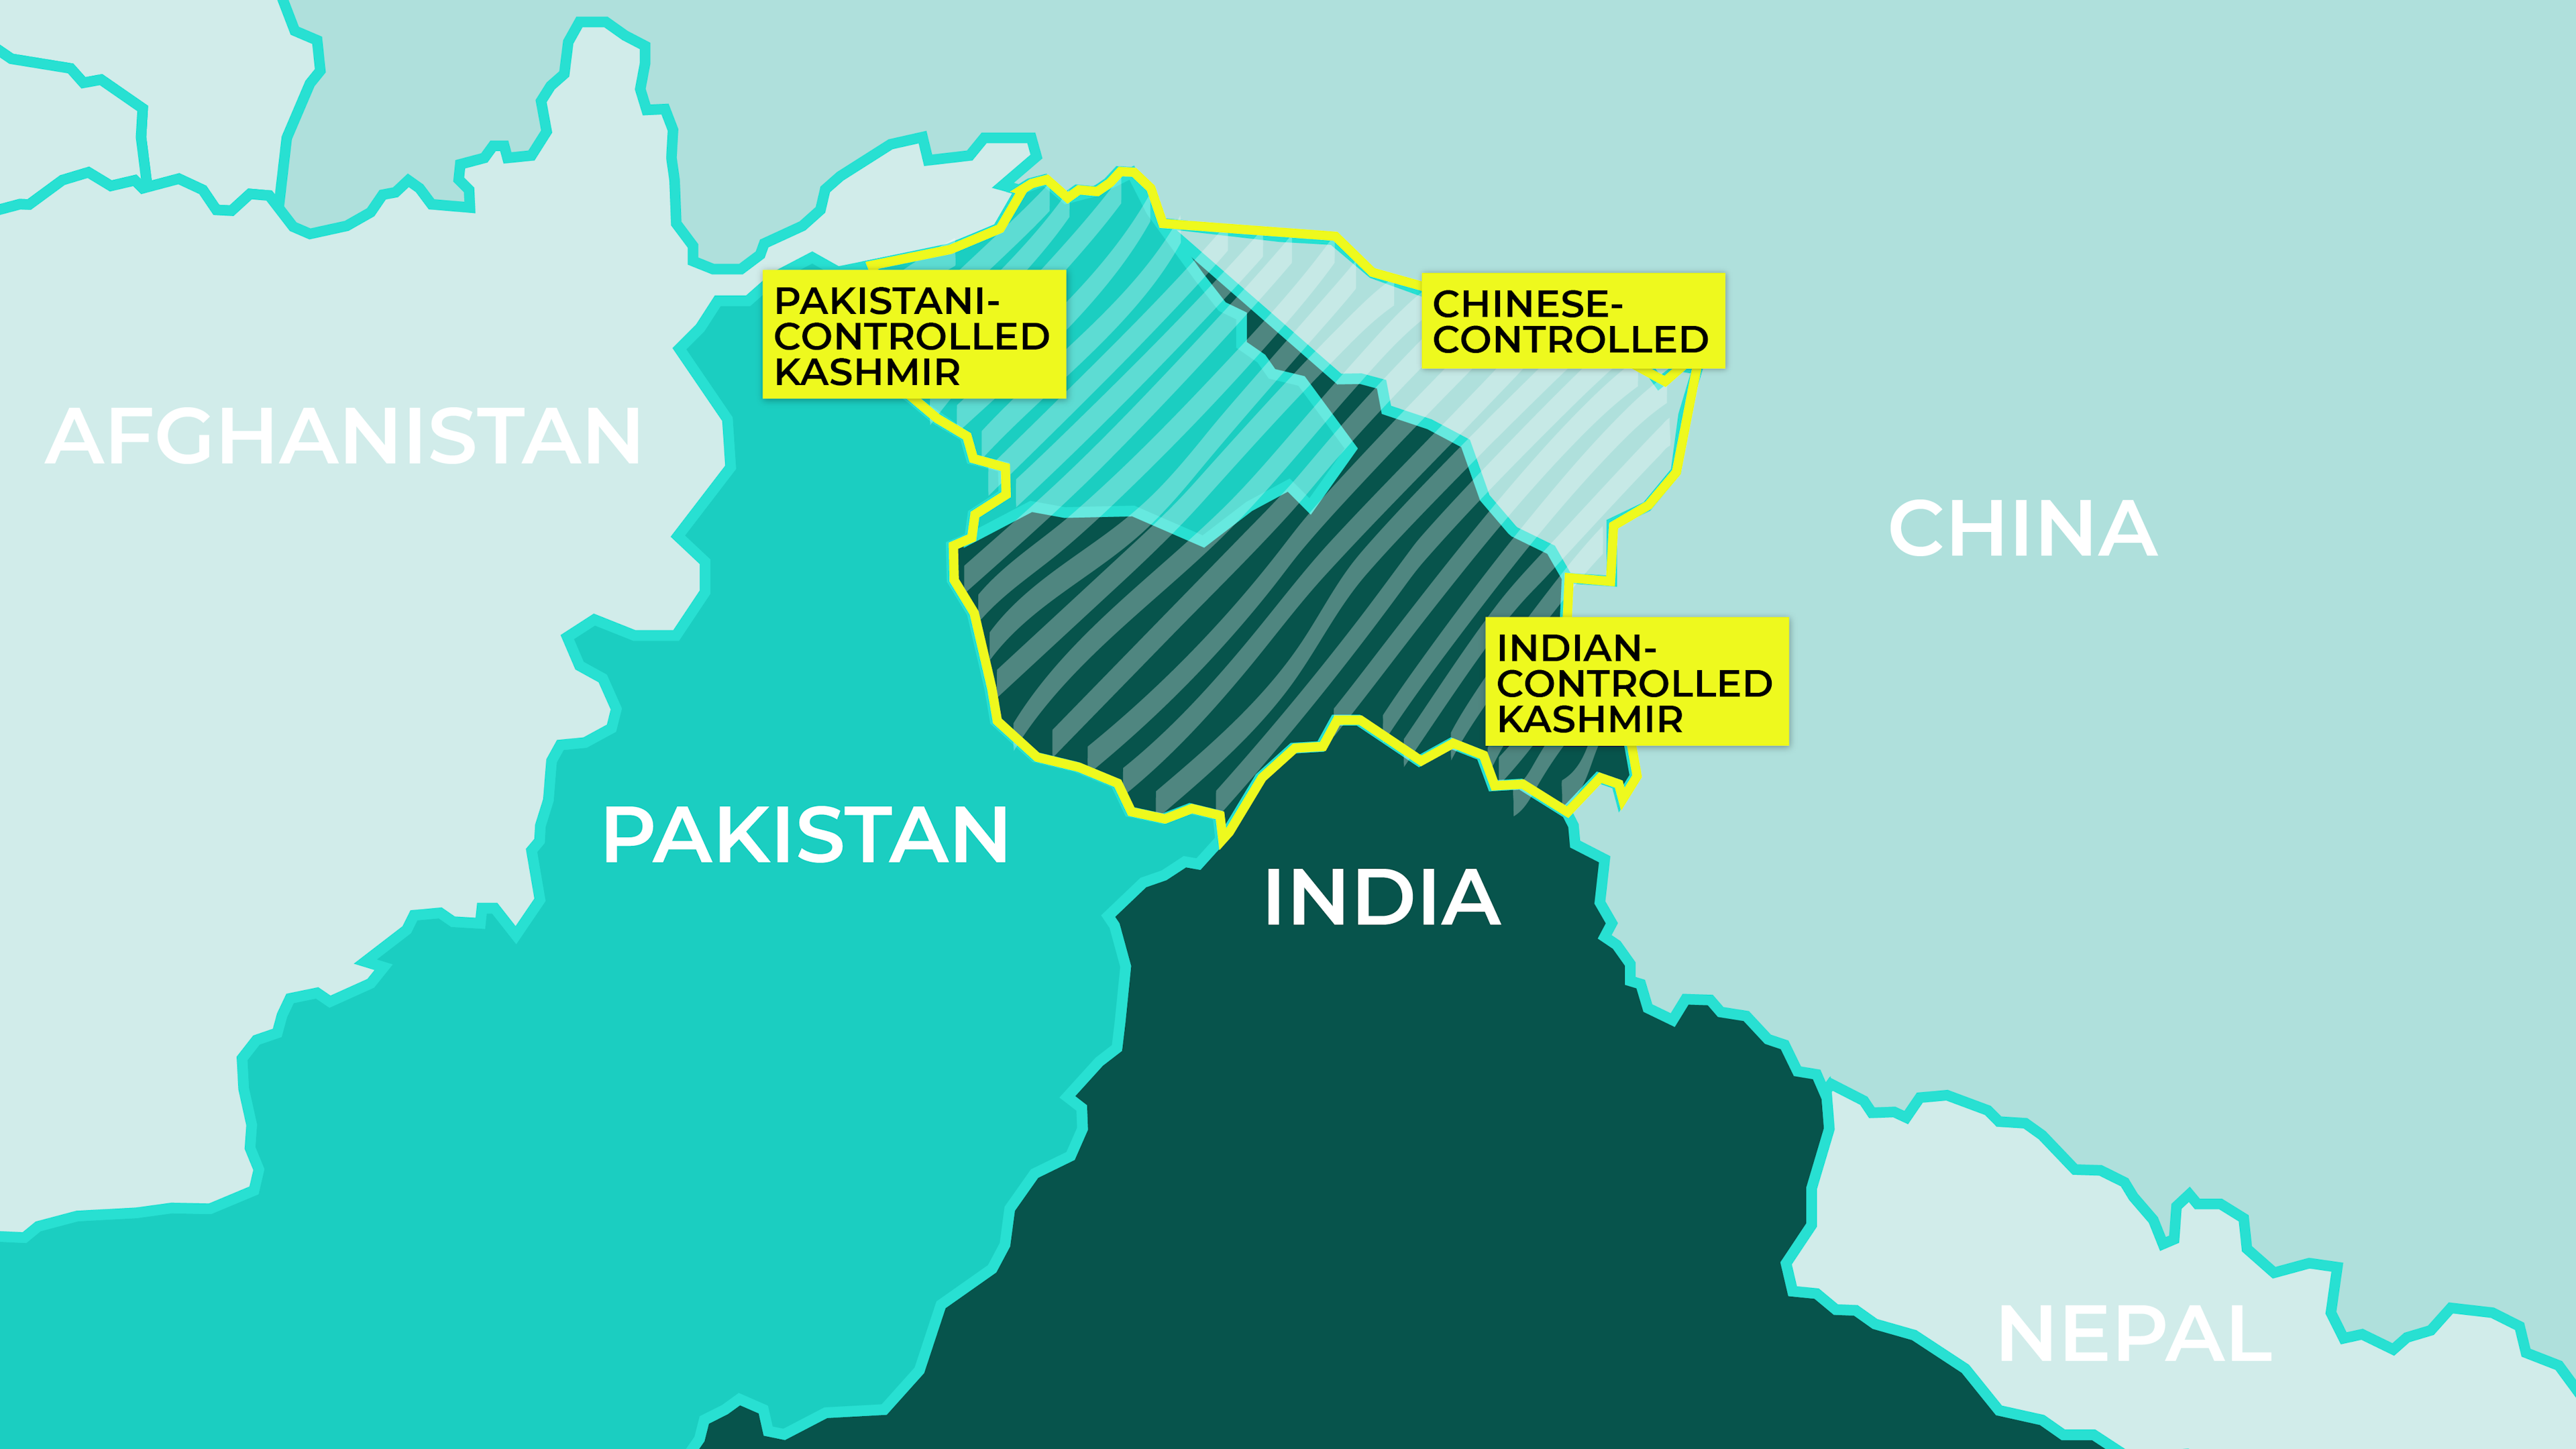 India Pakistan Map